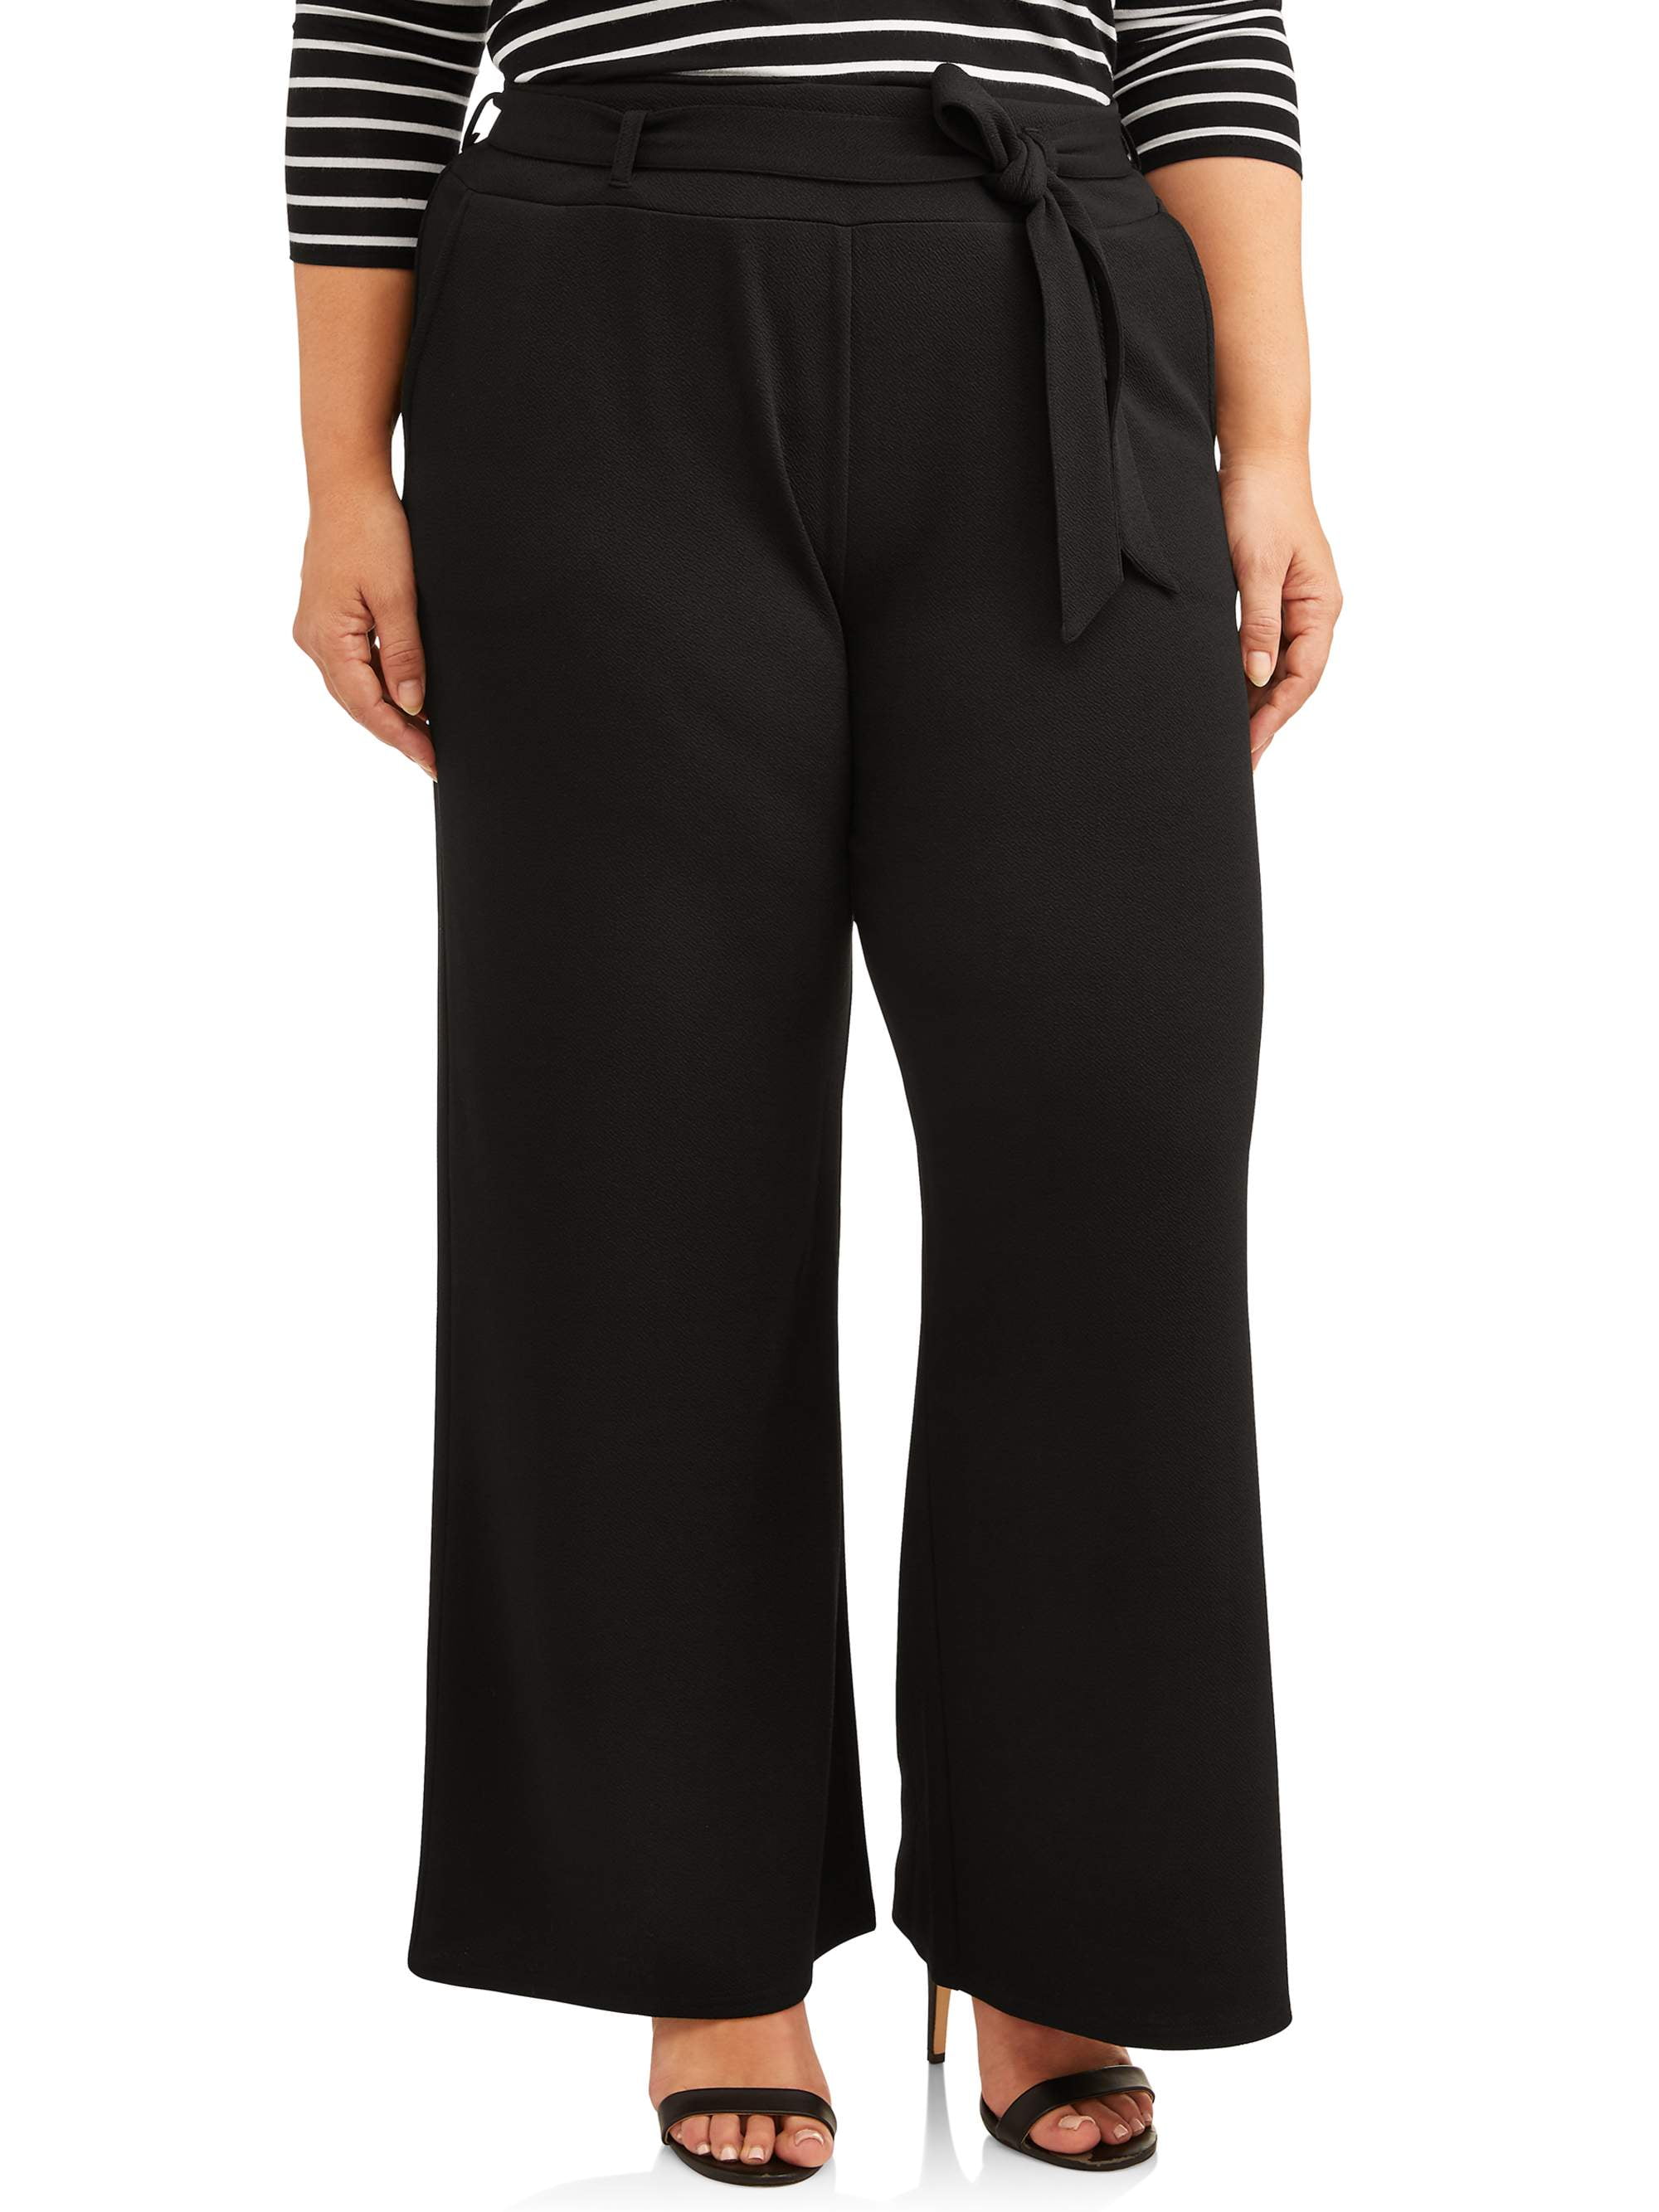 Terra & Sky Women's Plus Size Wide Leg Pants - Walmart.com